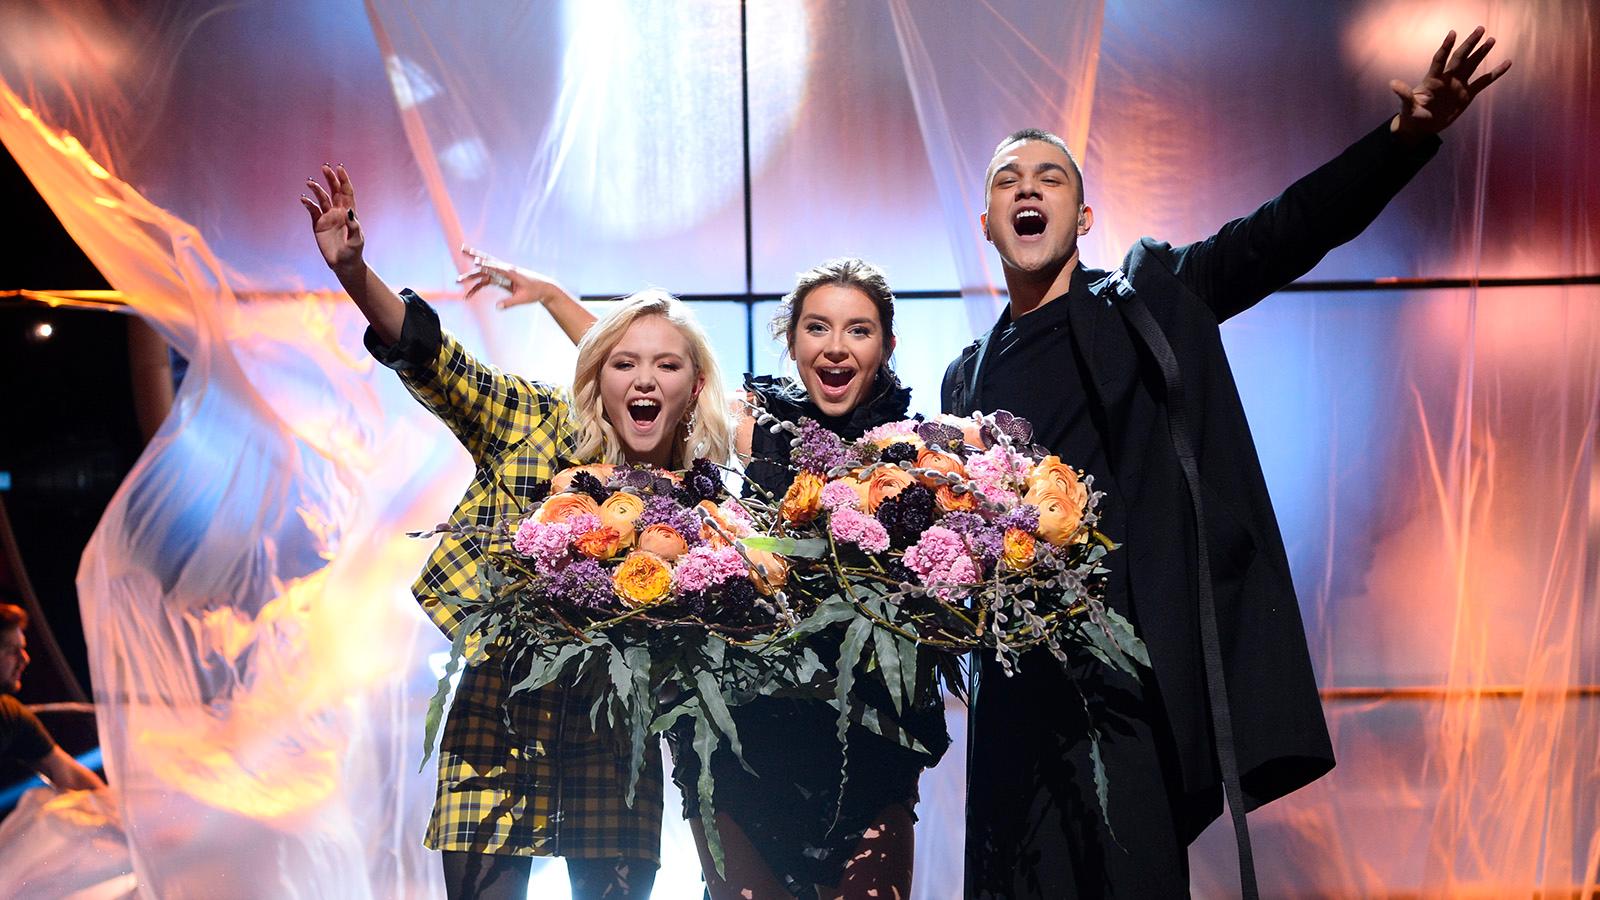 Malou Prytz, Hanna Ferm och Liamoo jublar över sina finalplatser i Melodifestivalen.